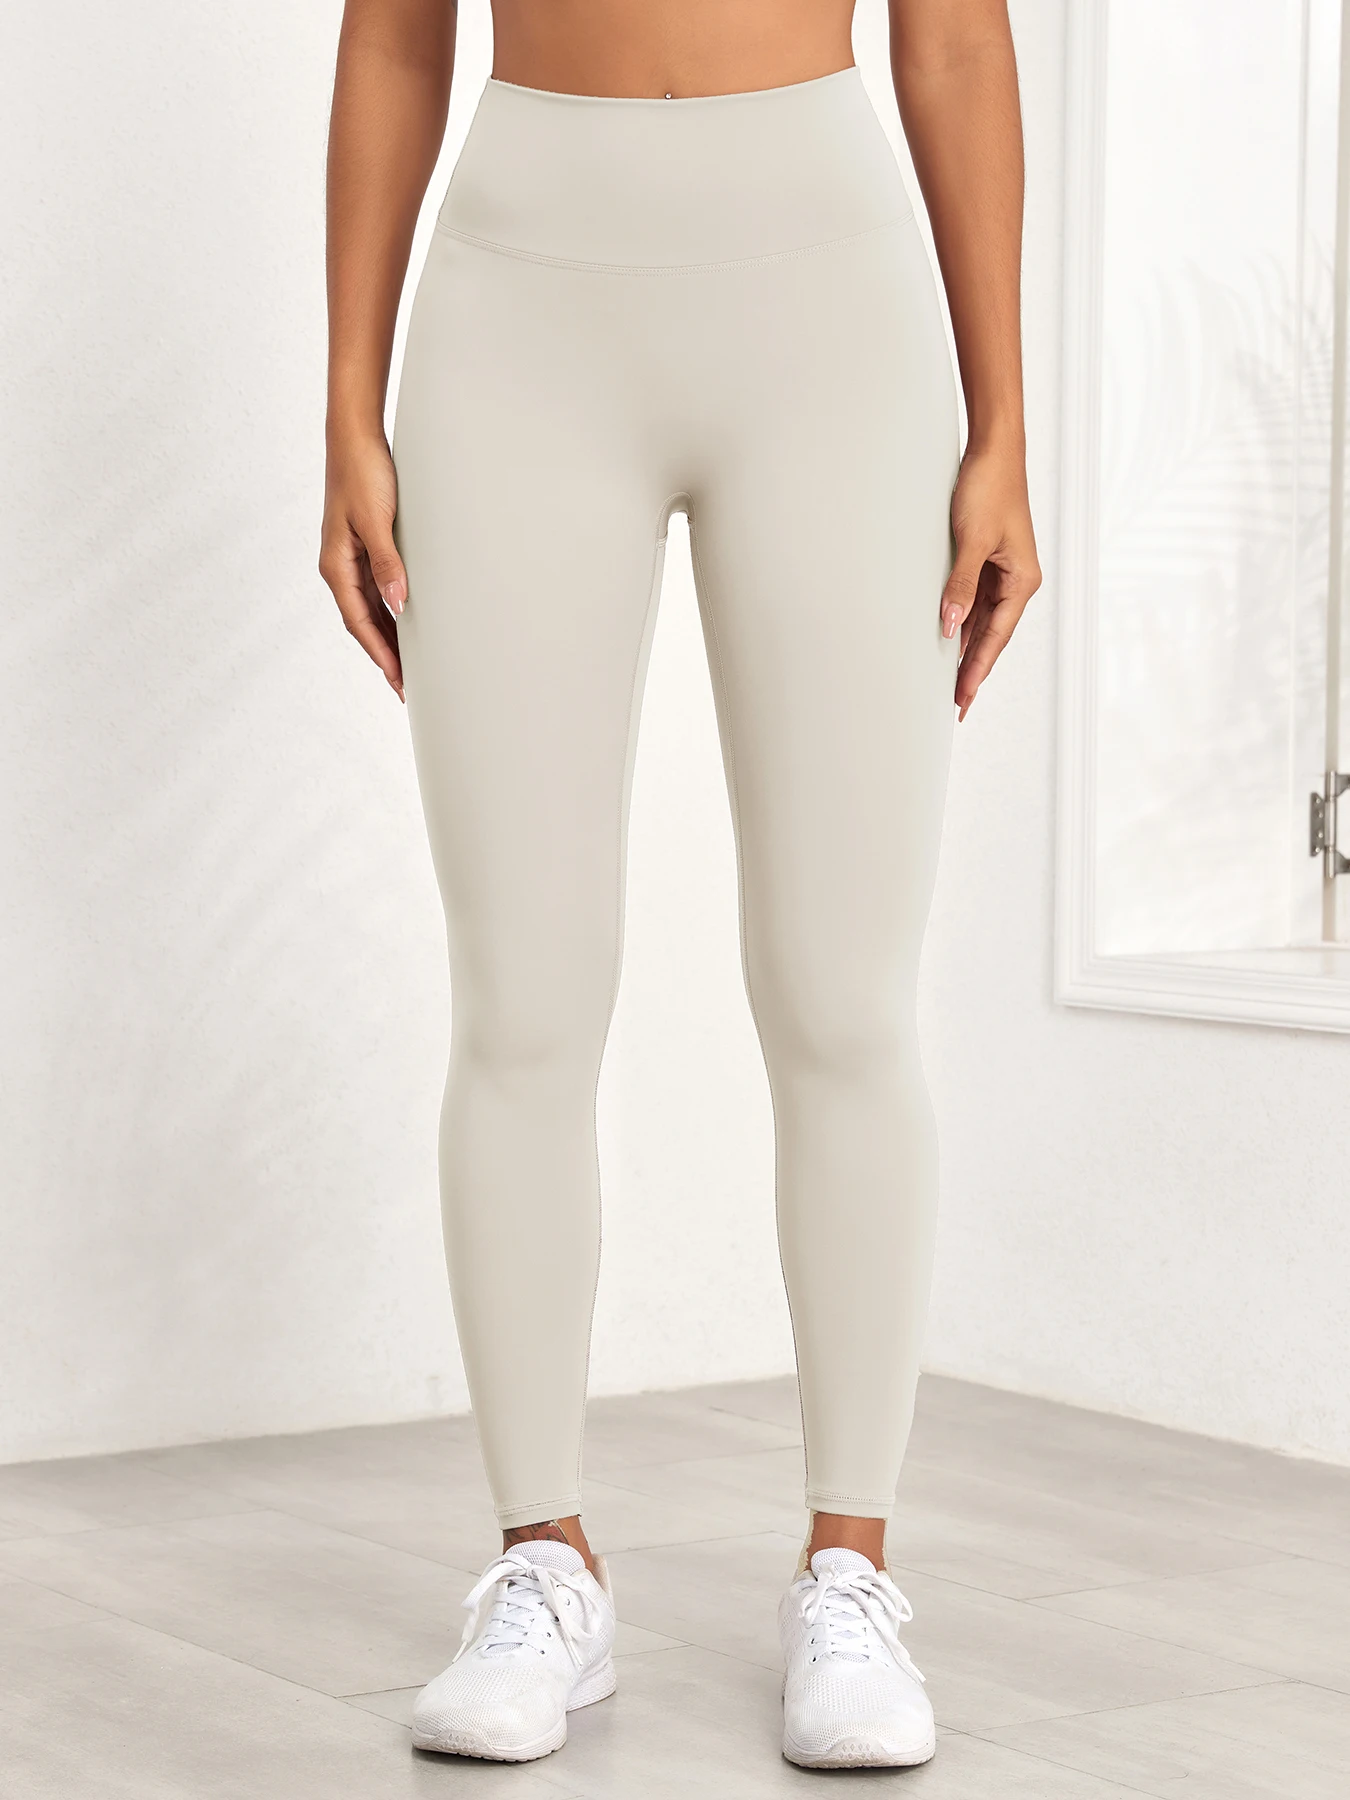 

CHRLEISURE Seamless Yoga Pants for Women High Waist Fitness Legging Solid Color Running Tight Soft Slim Elastic Sports Leggings